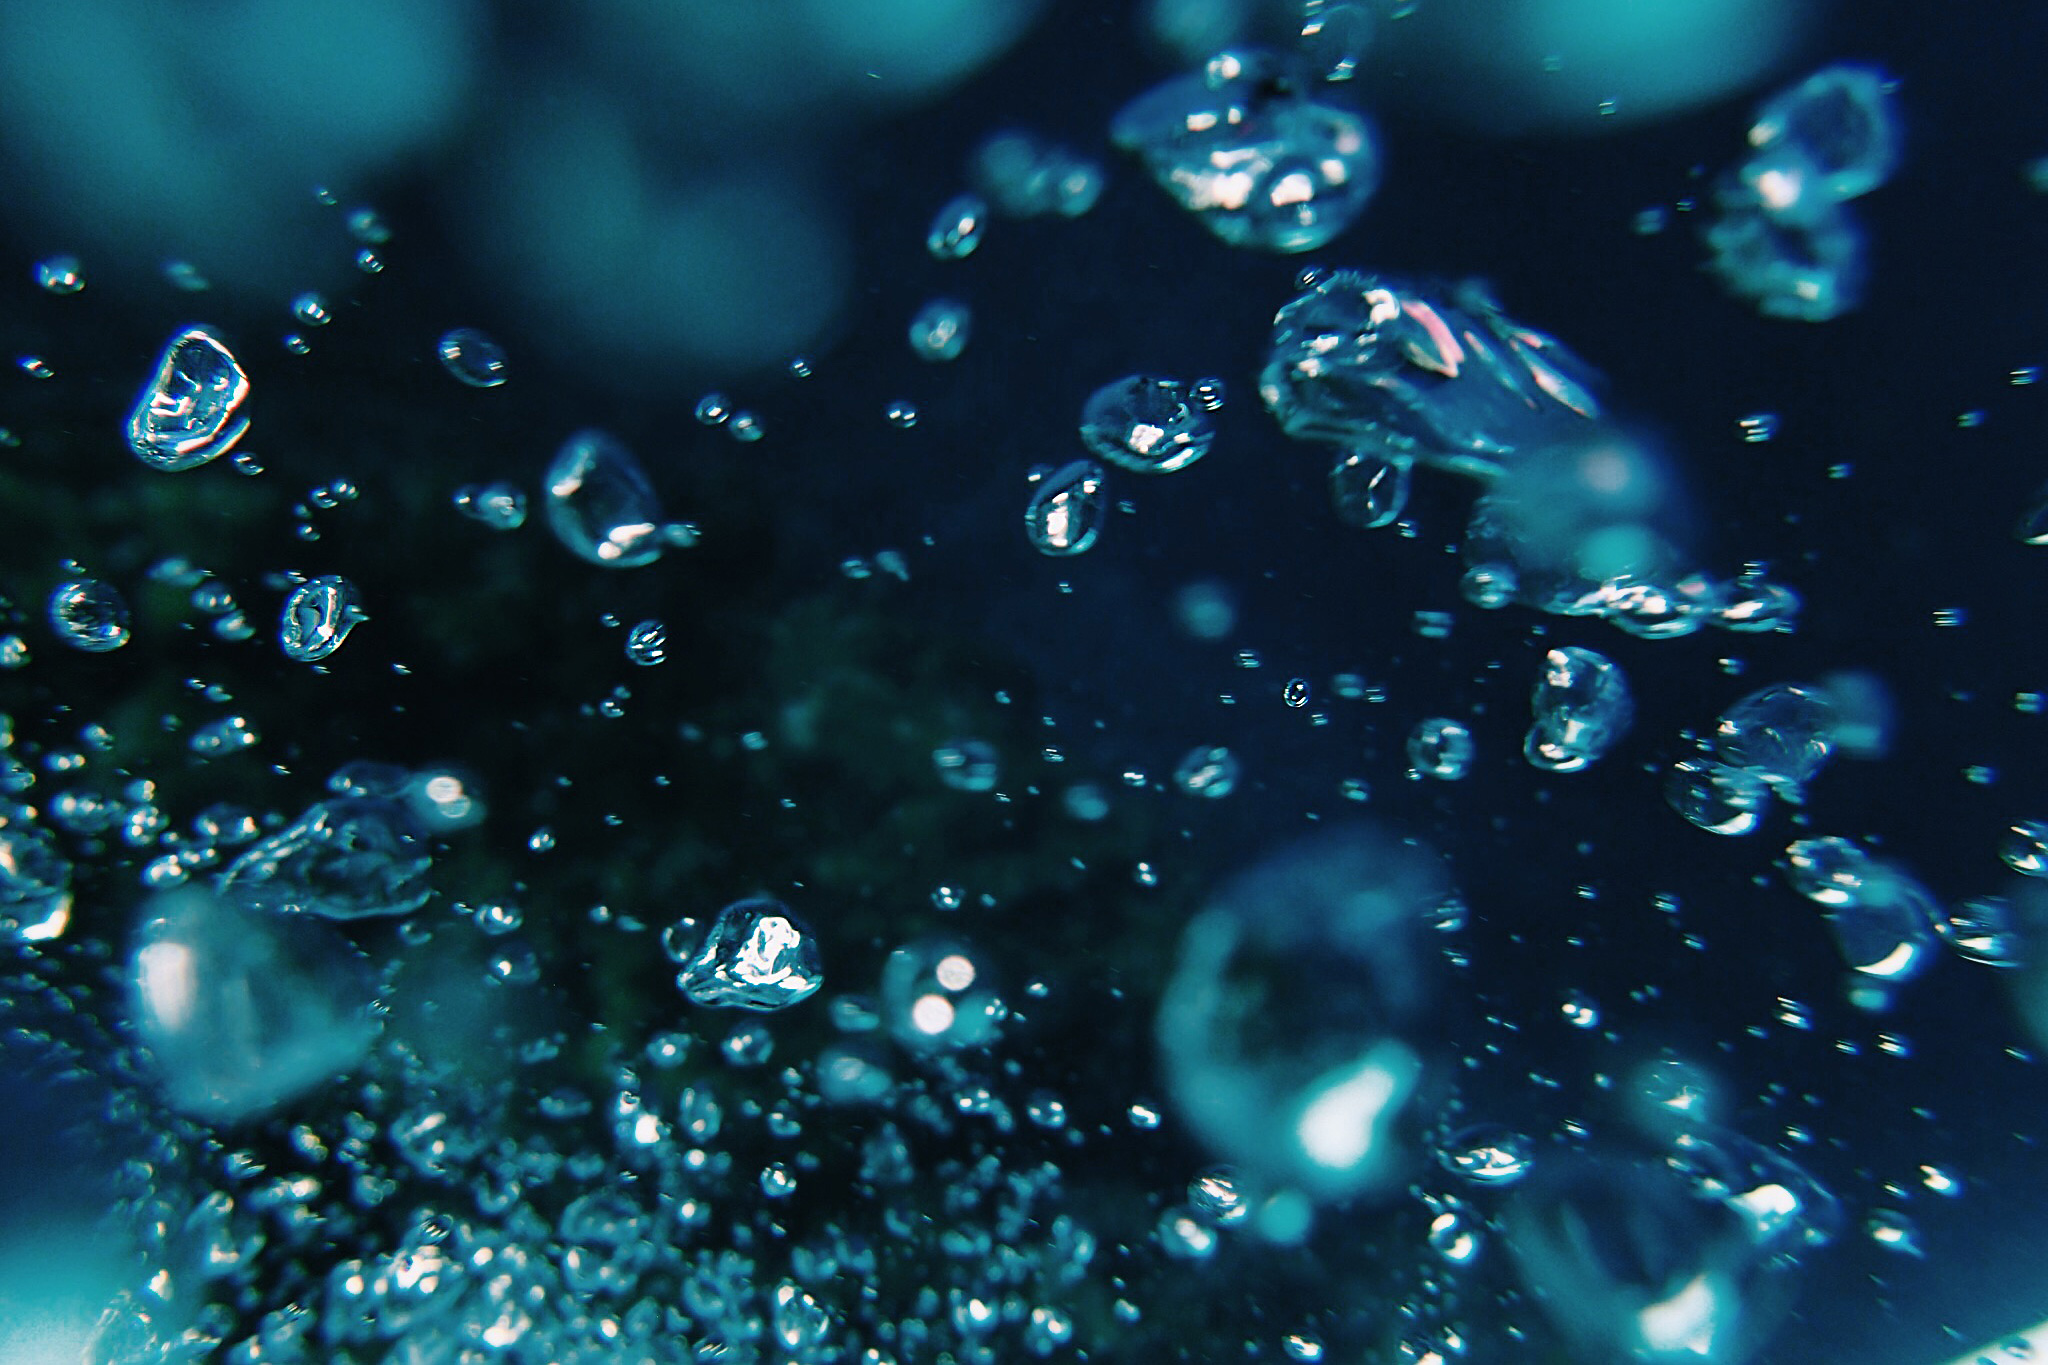 水の中で空気の泡がブクブクする様子のフリー画像 おしゃれなフリー写真素材 Girly Drop